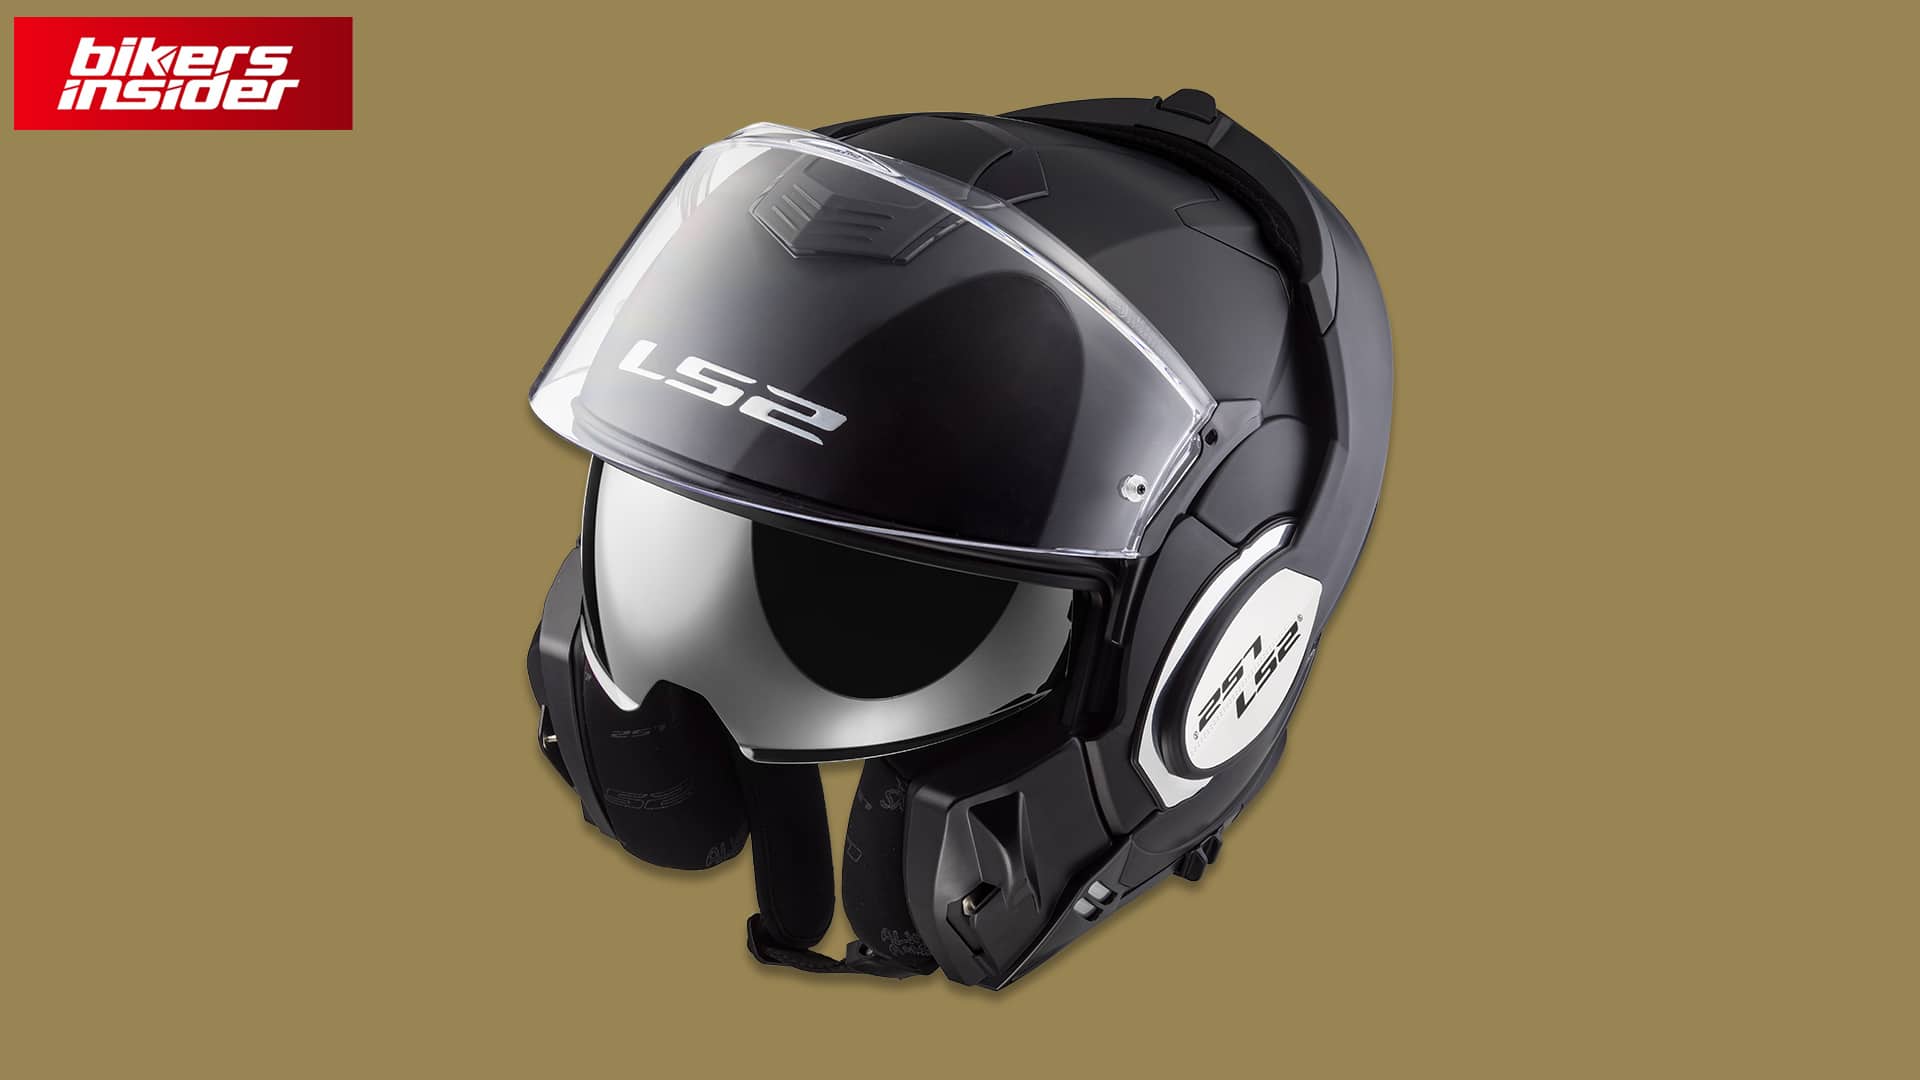 LS2 Valiant Helmet Review - Best Modular Helmet of 2021? - Bikers Insider